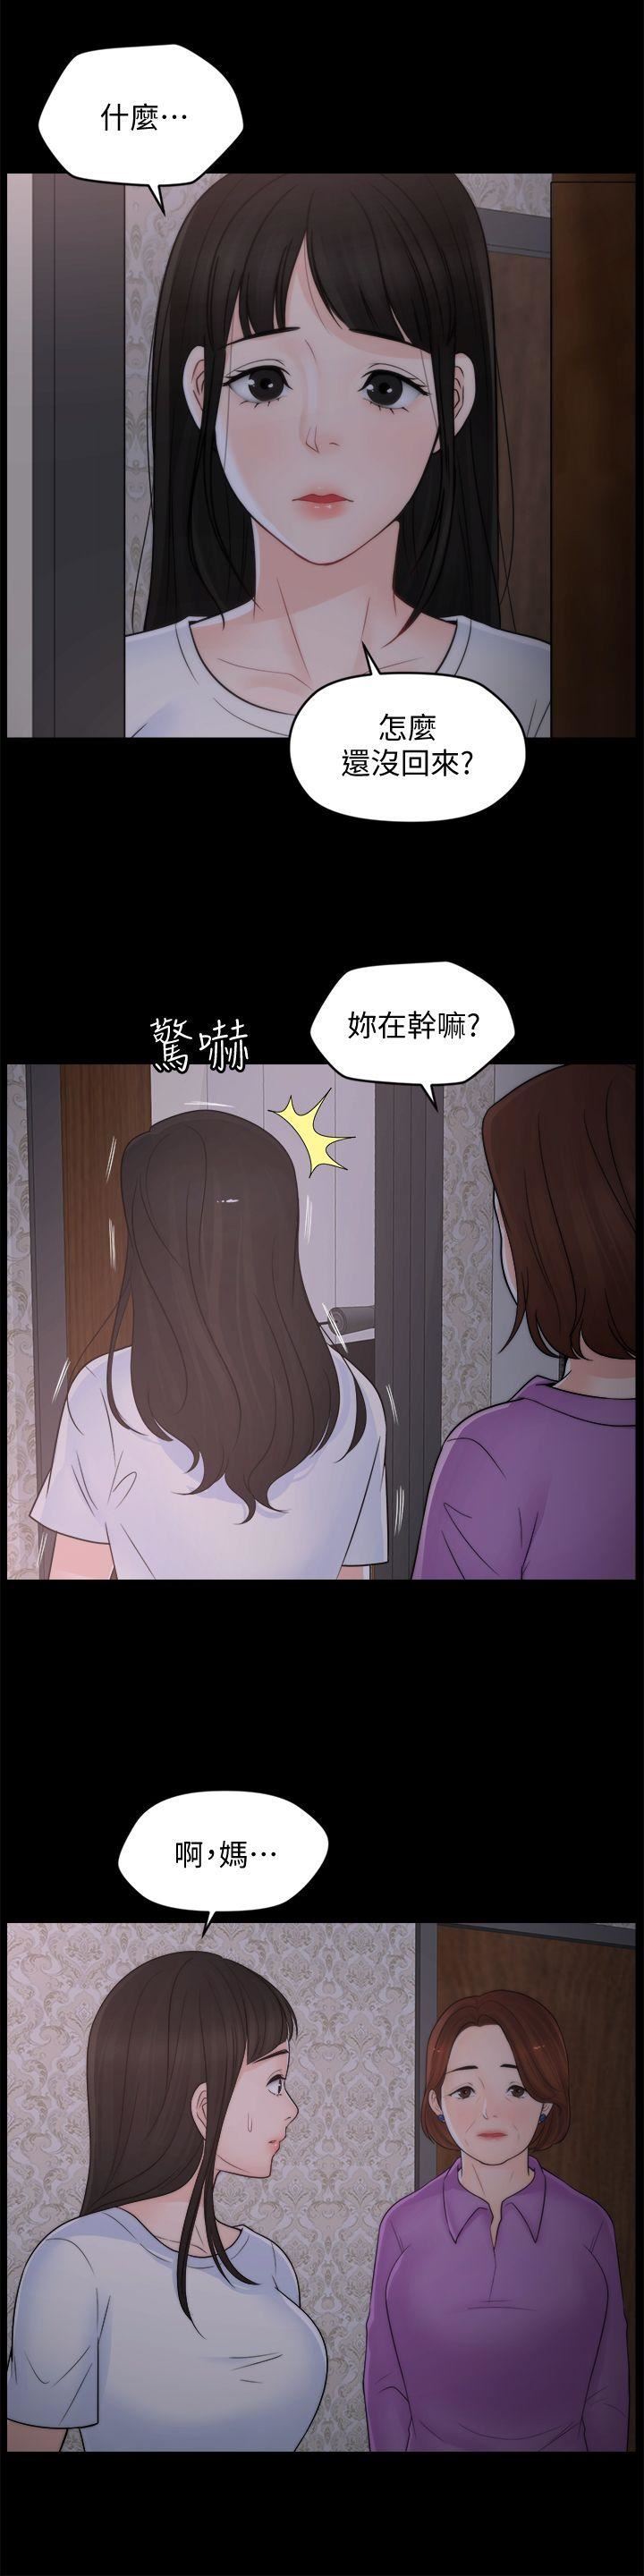 韩国污漫画 偷偷愛 第43话-奇妙的快感 18